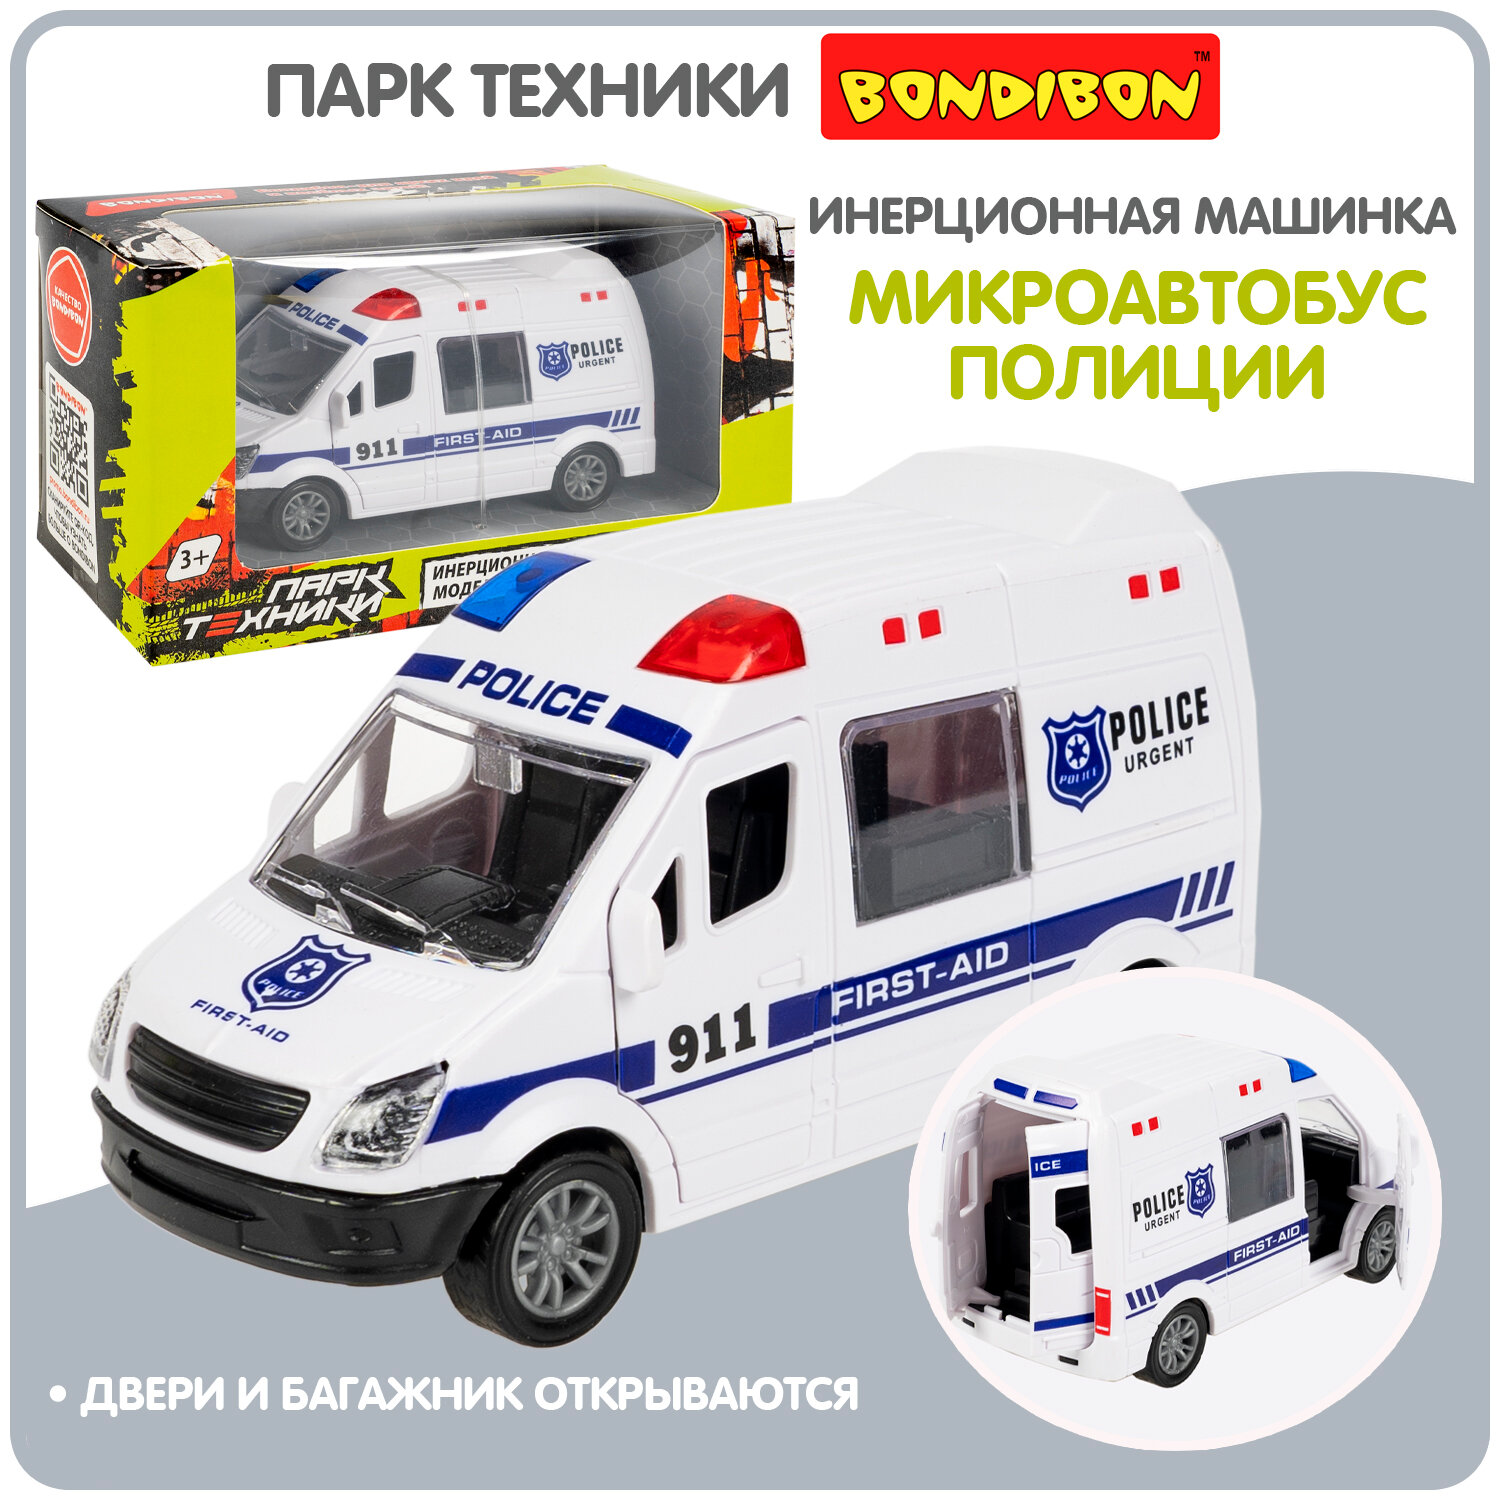 Полицейская машинка для мальчиков микроавтобус Bondibon "Парк техники" инерционная детская игрушка, спецслужба полиция